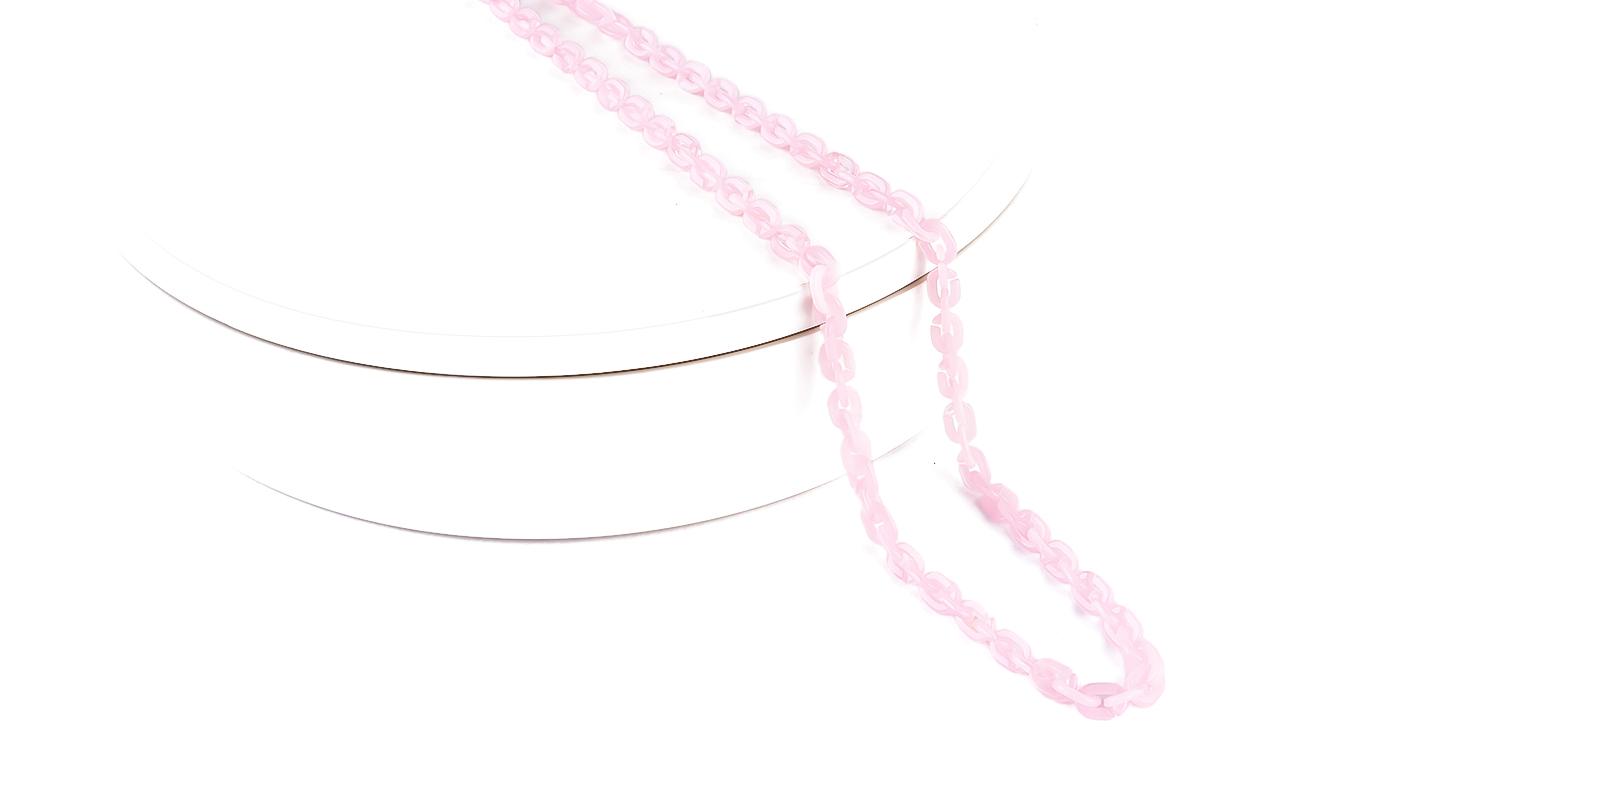 Hepat - Eyeglasses Chain Pink  eyeglasses-chain , glasses-chain Frames from ABBE Glasses